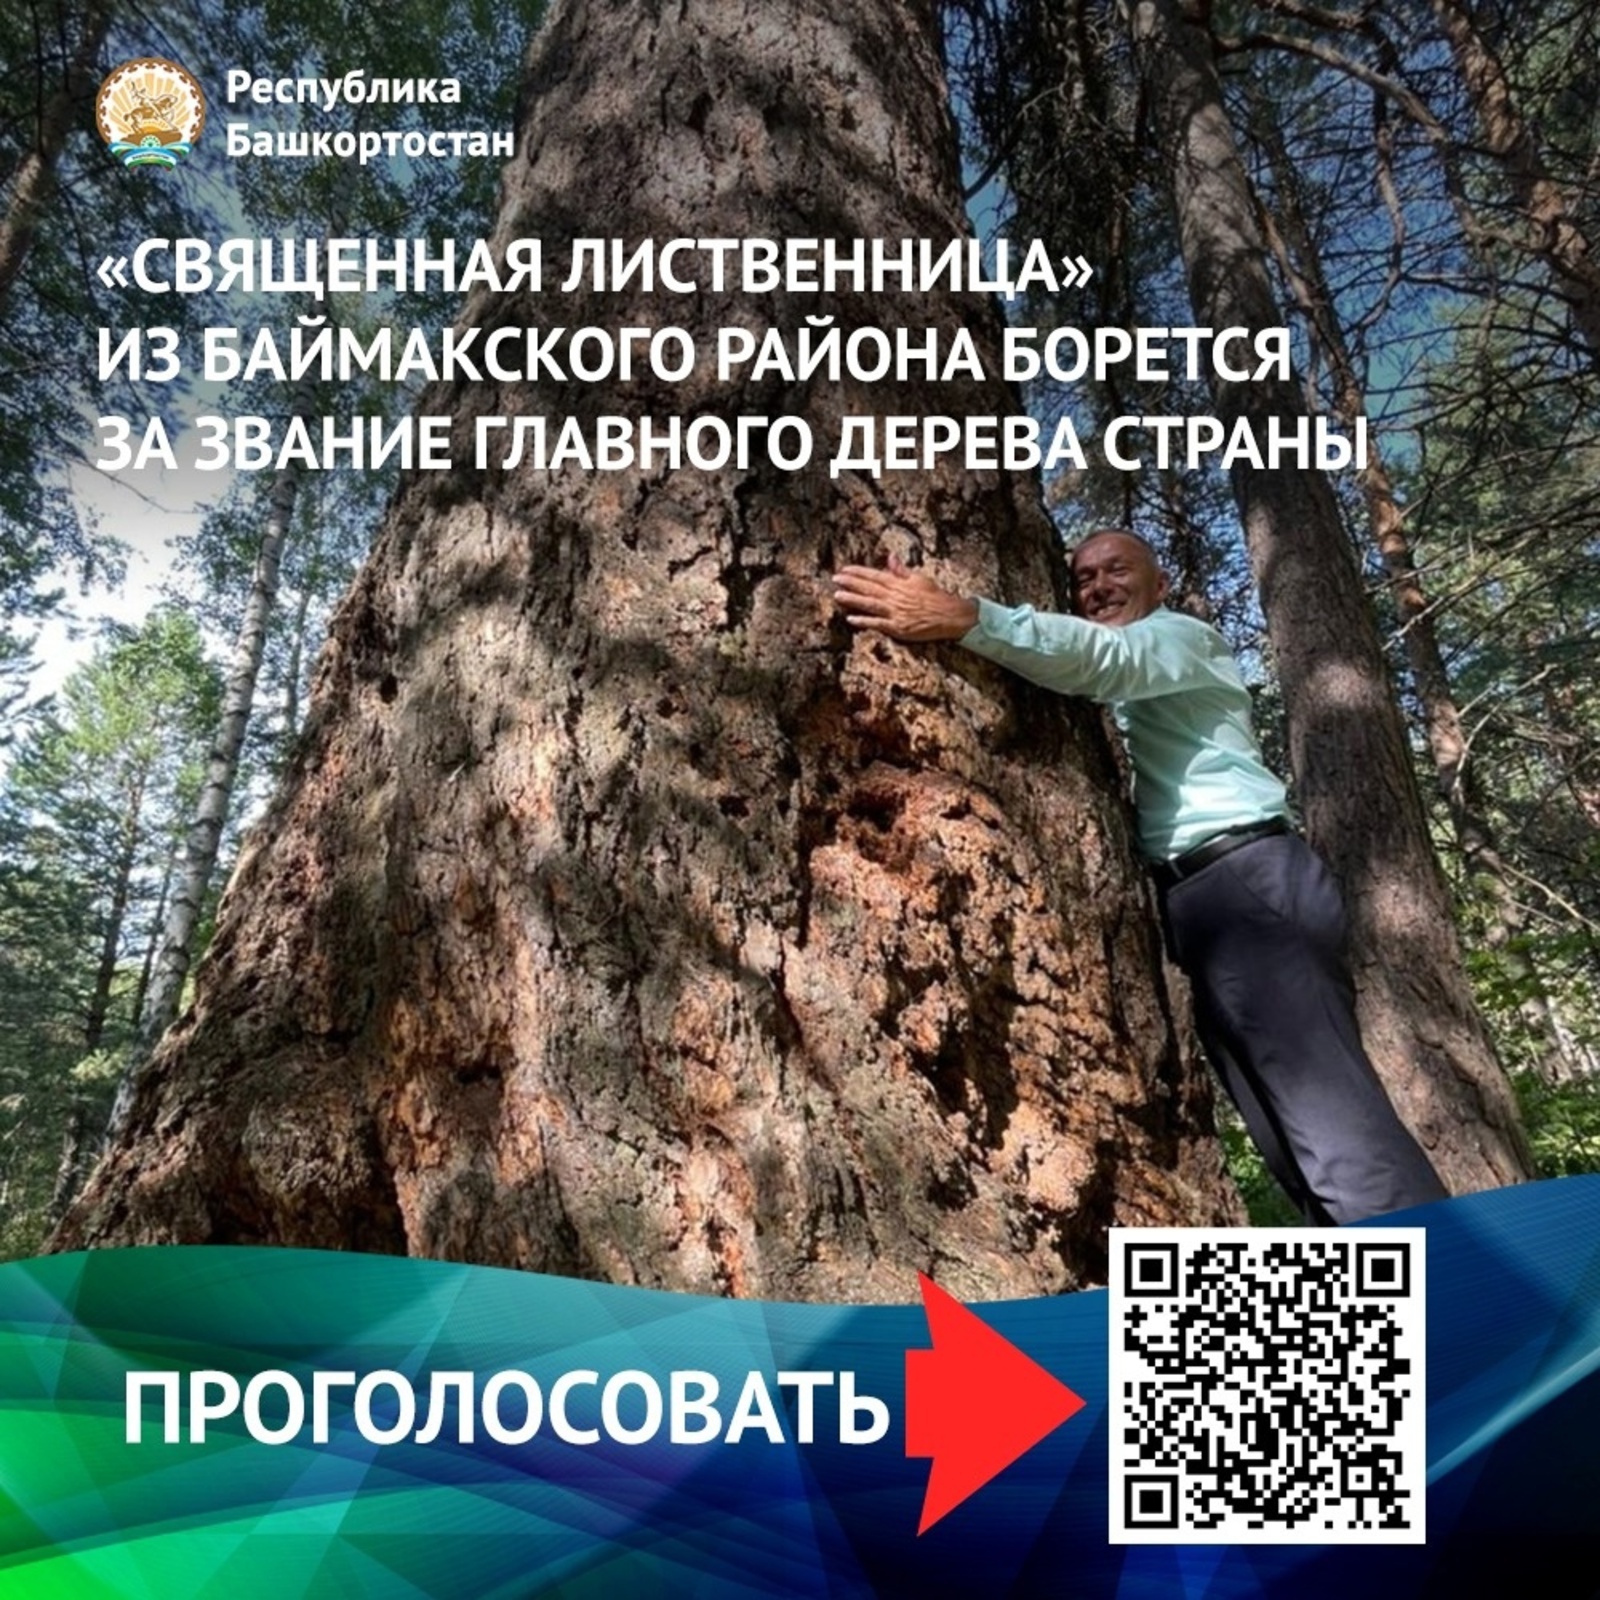 За звание главного дерева страны борется «Священная лиственница» из Башкортостана